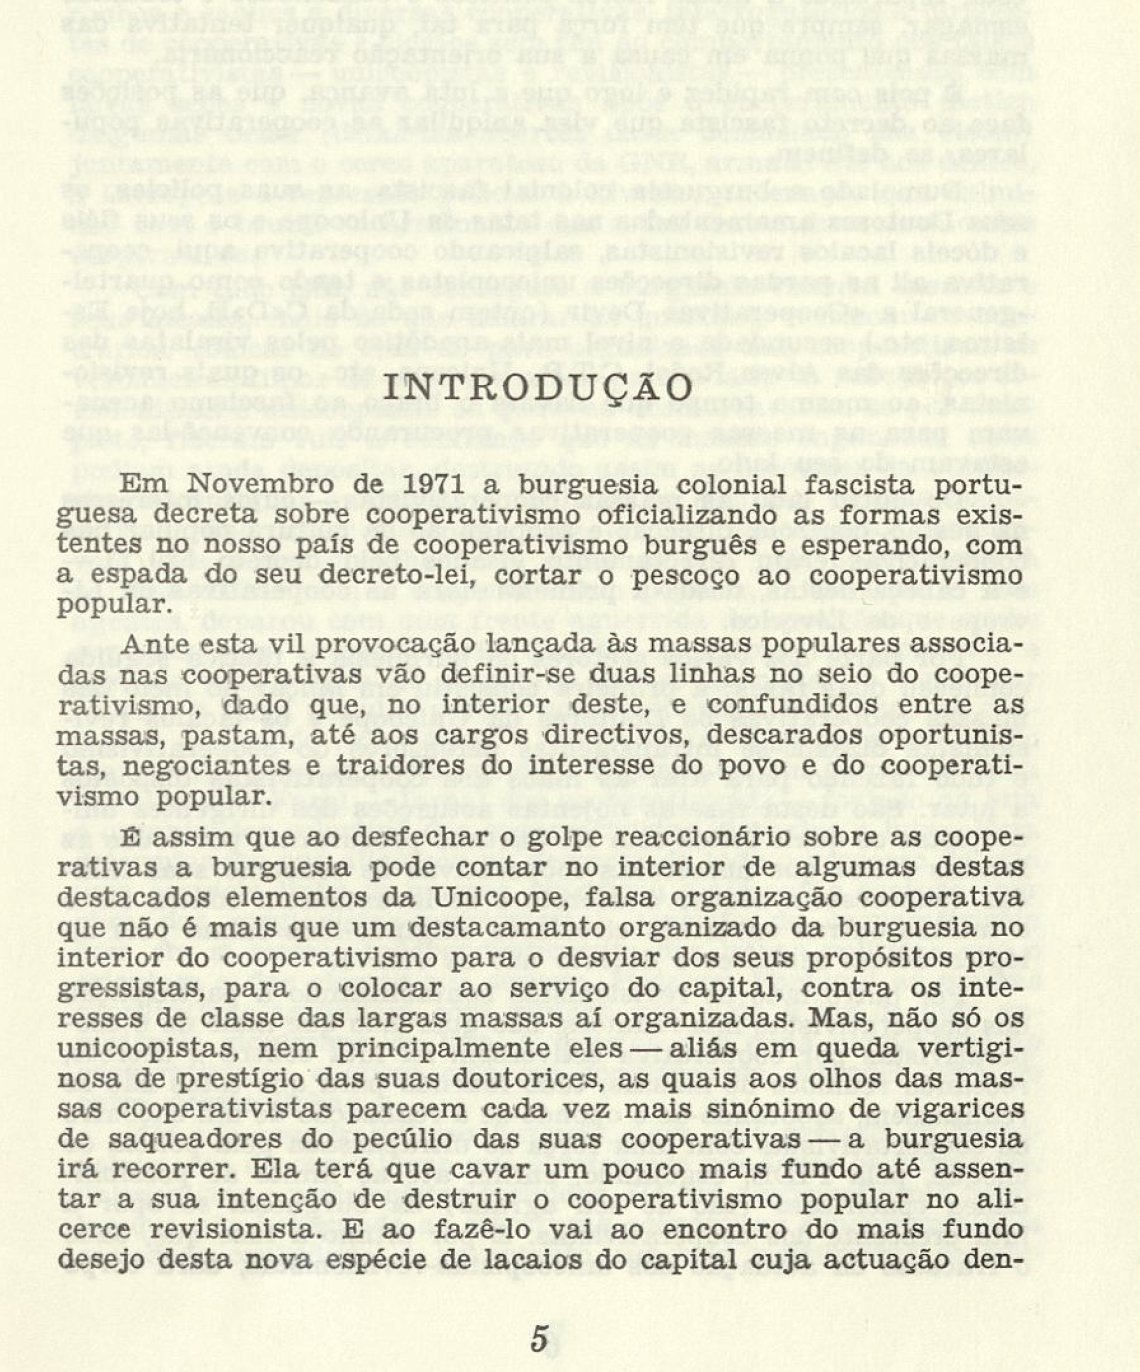 "O Cooperativismo em Portugal (Outubro de 1974) "